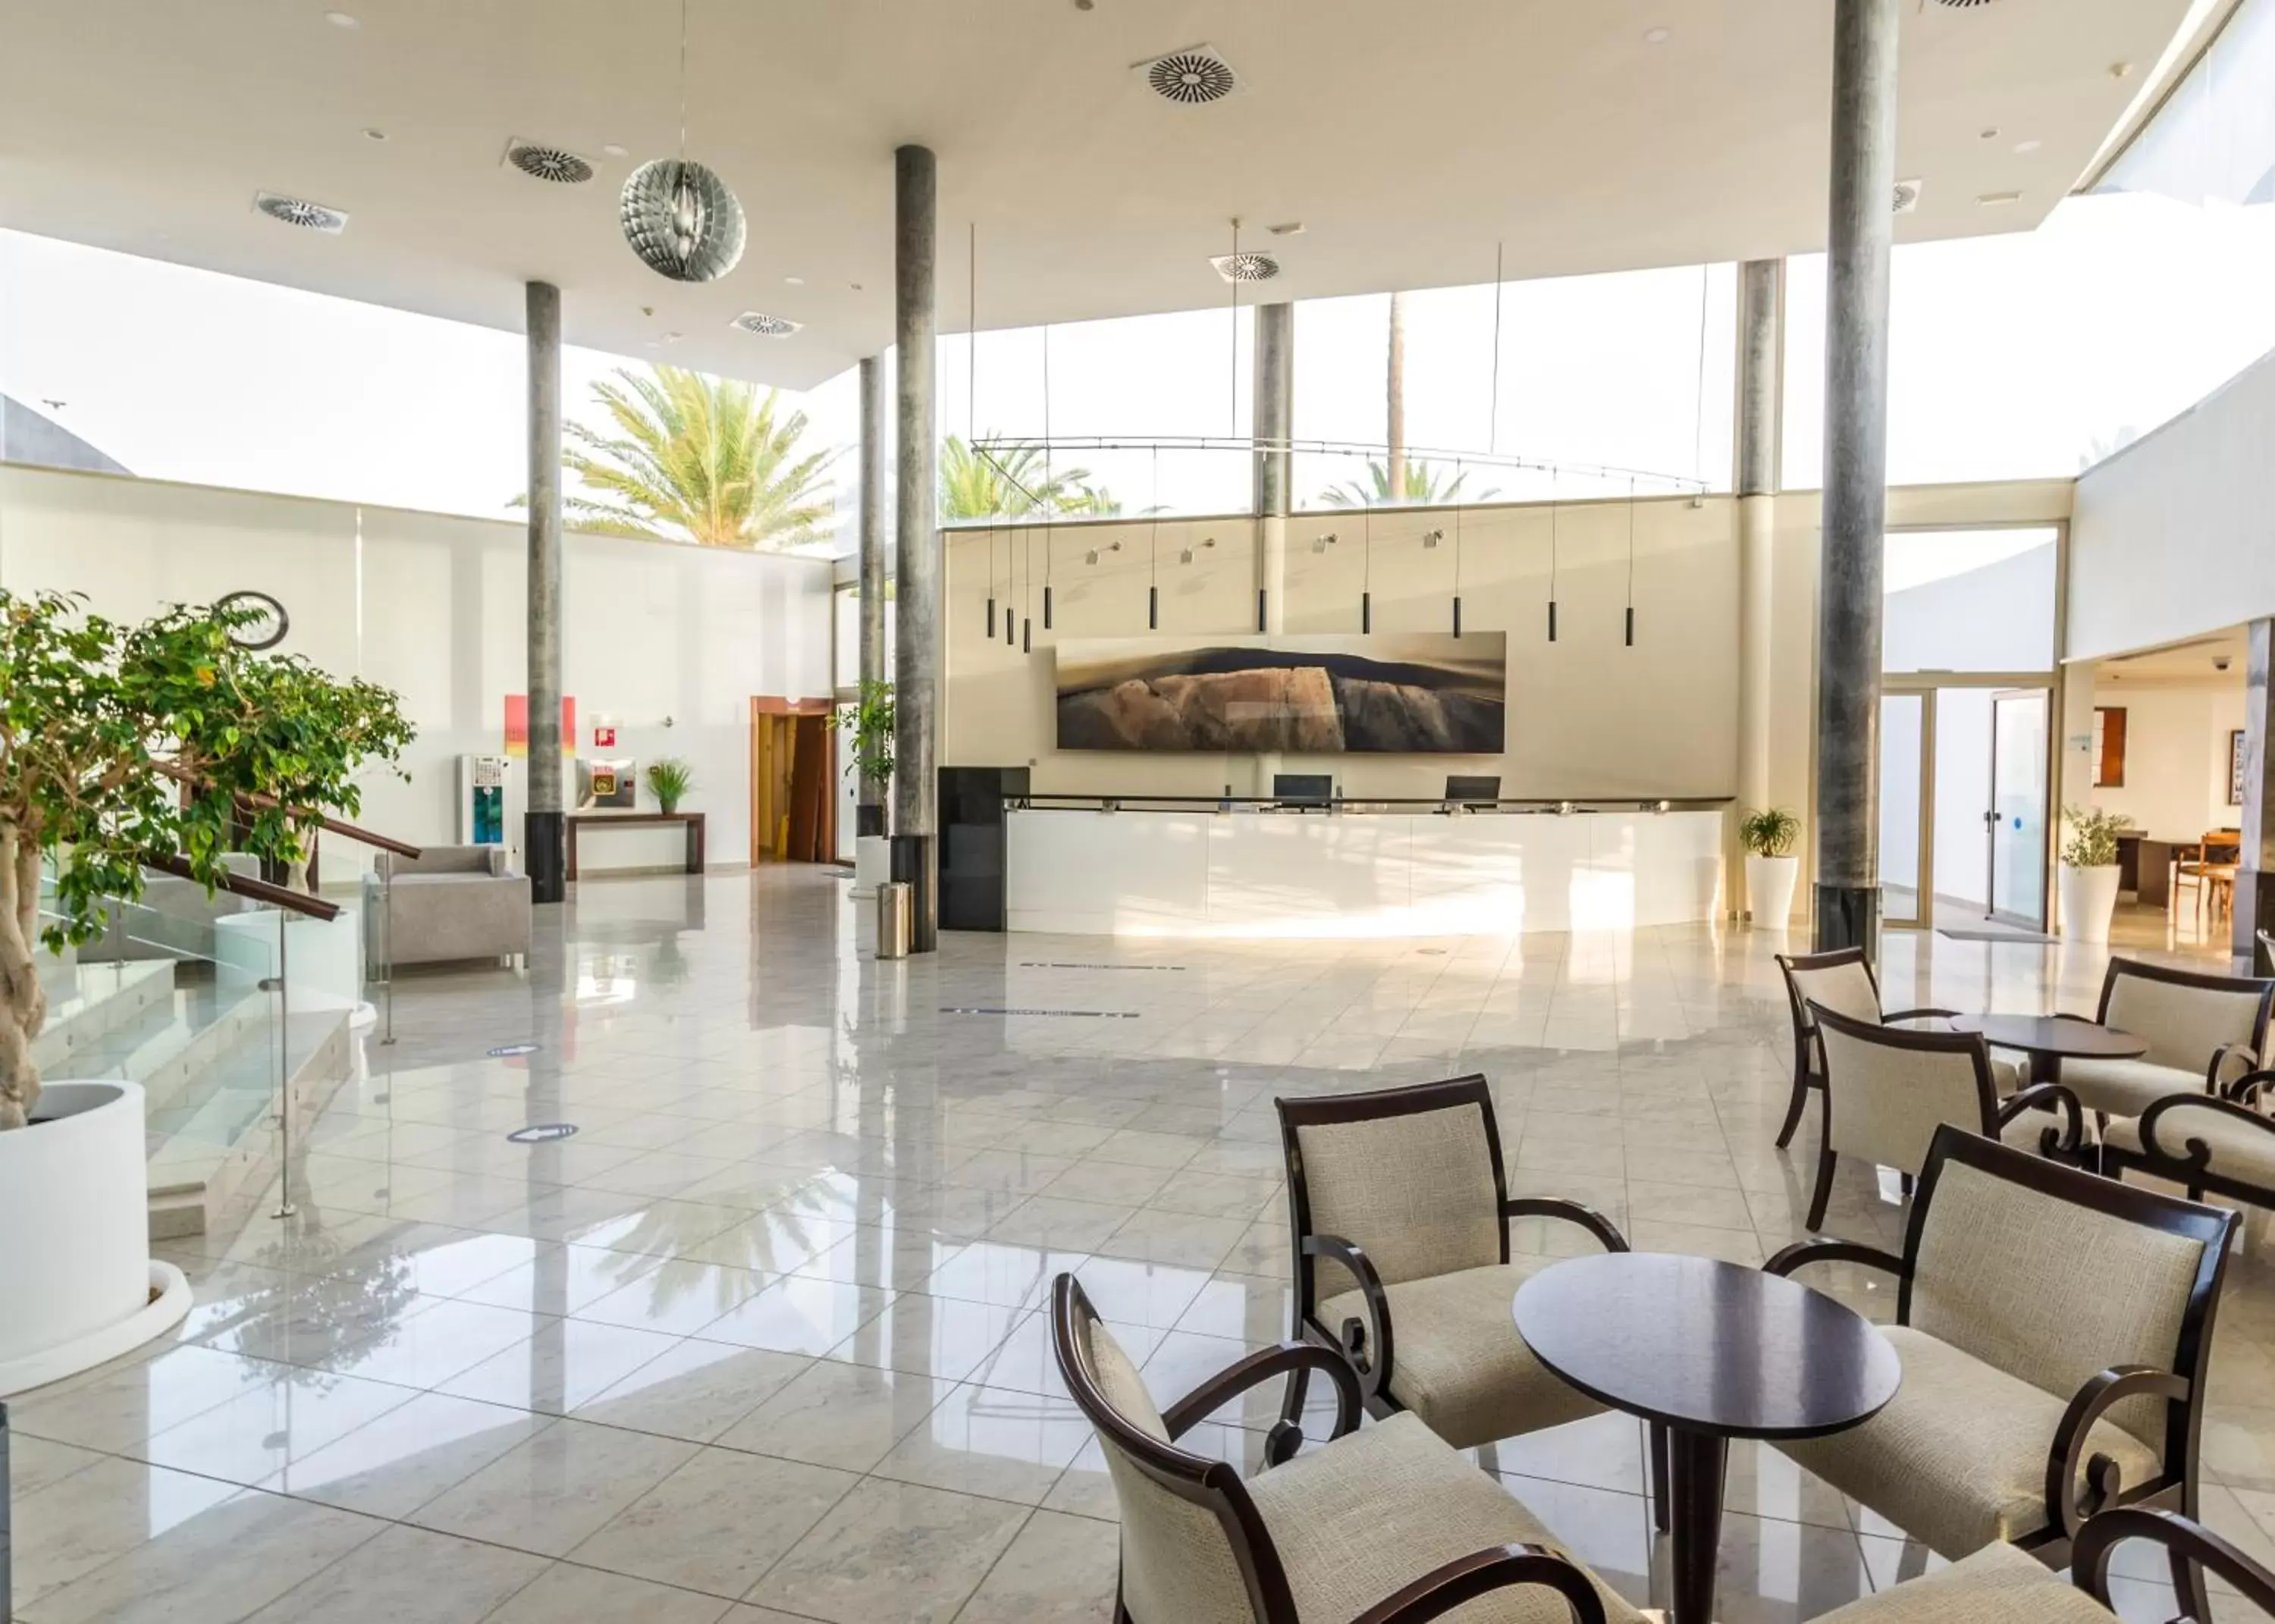 Lobby or reception in Hotel Las Costas